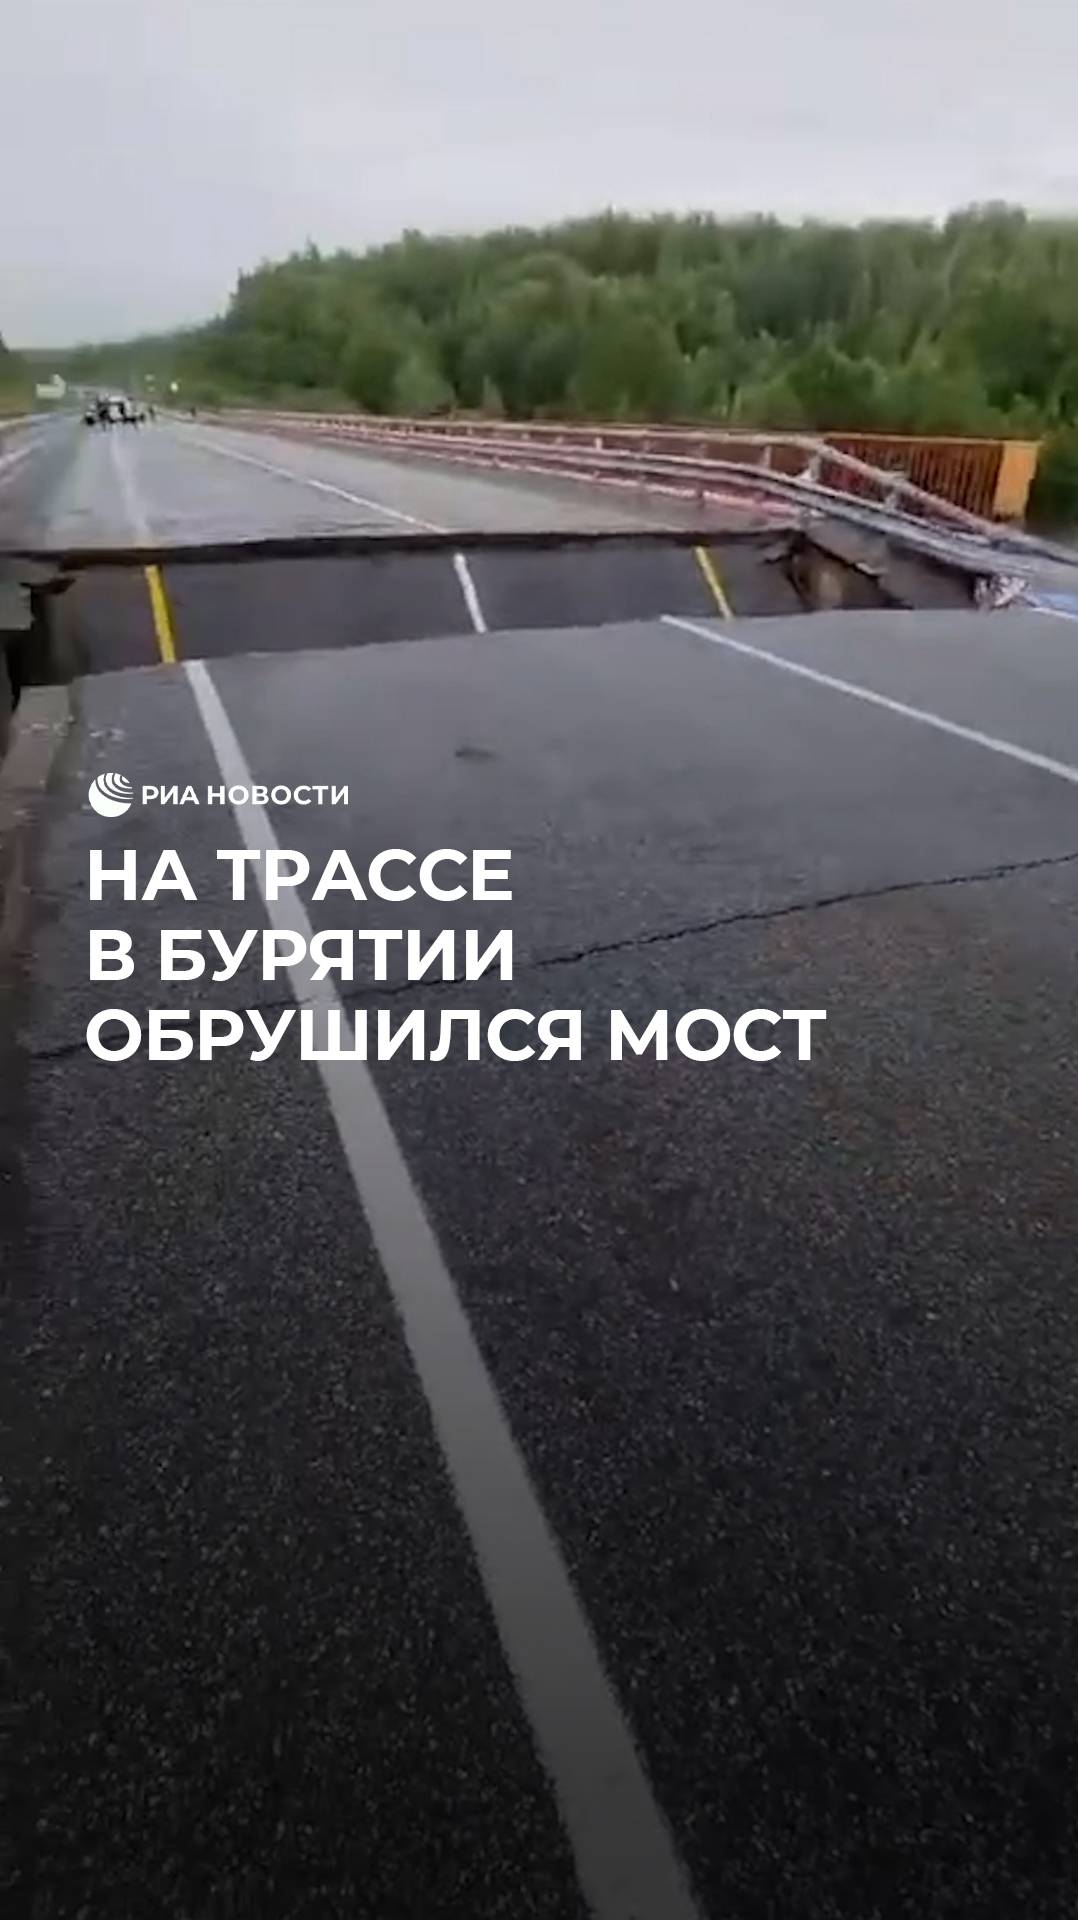 На трассе в Бурятии обрушился мост